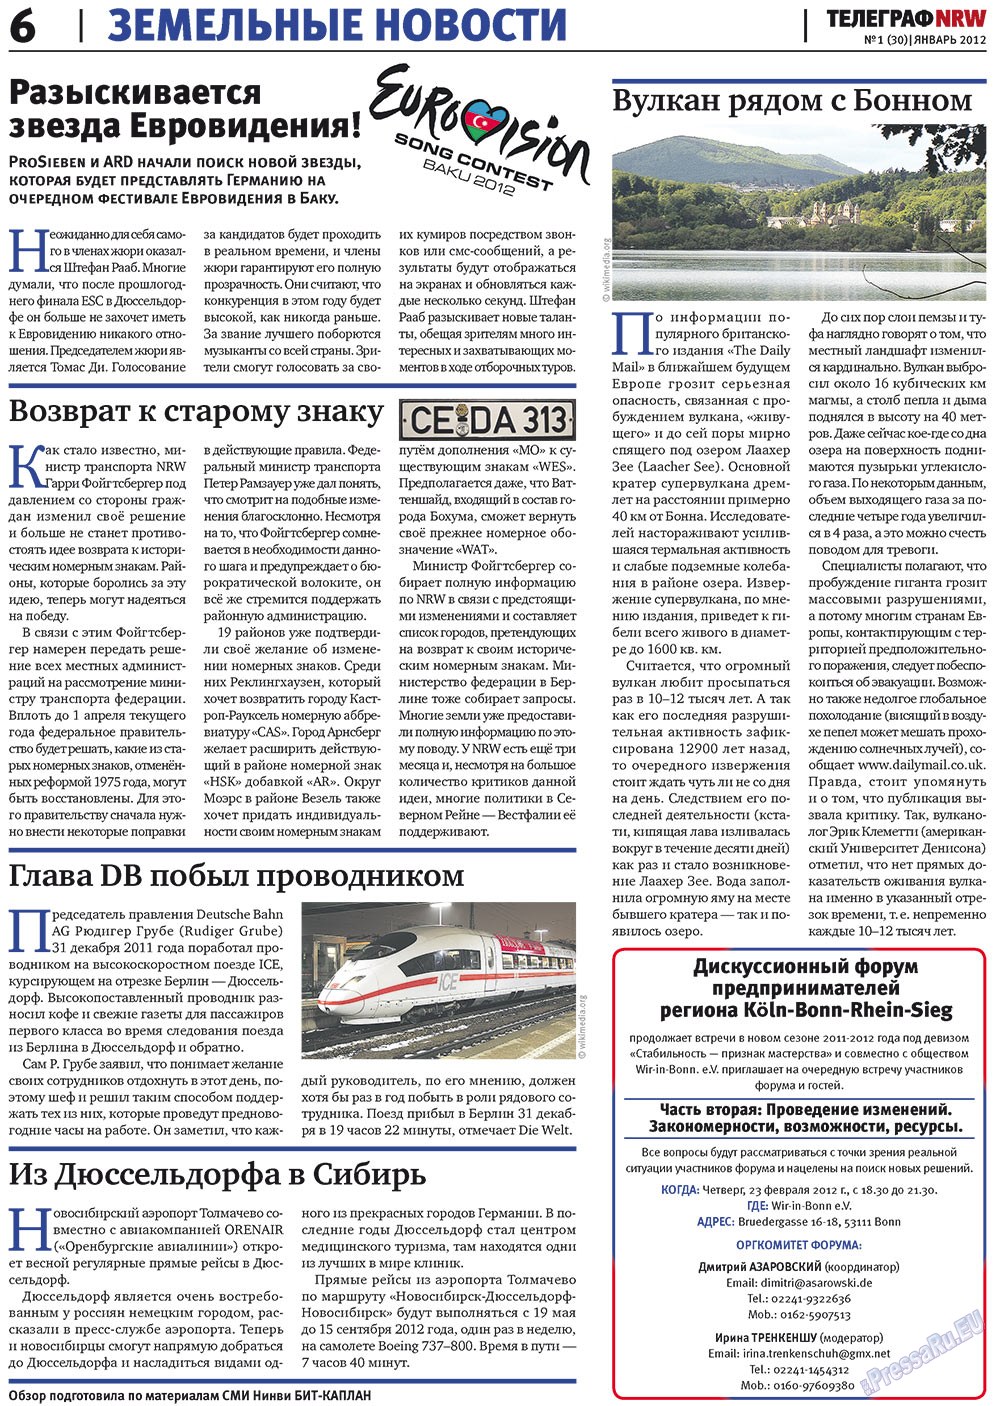 Телеграф NRW (газета). 2012 год, номер 1, стр. 6